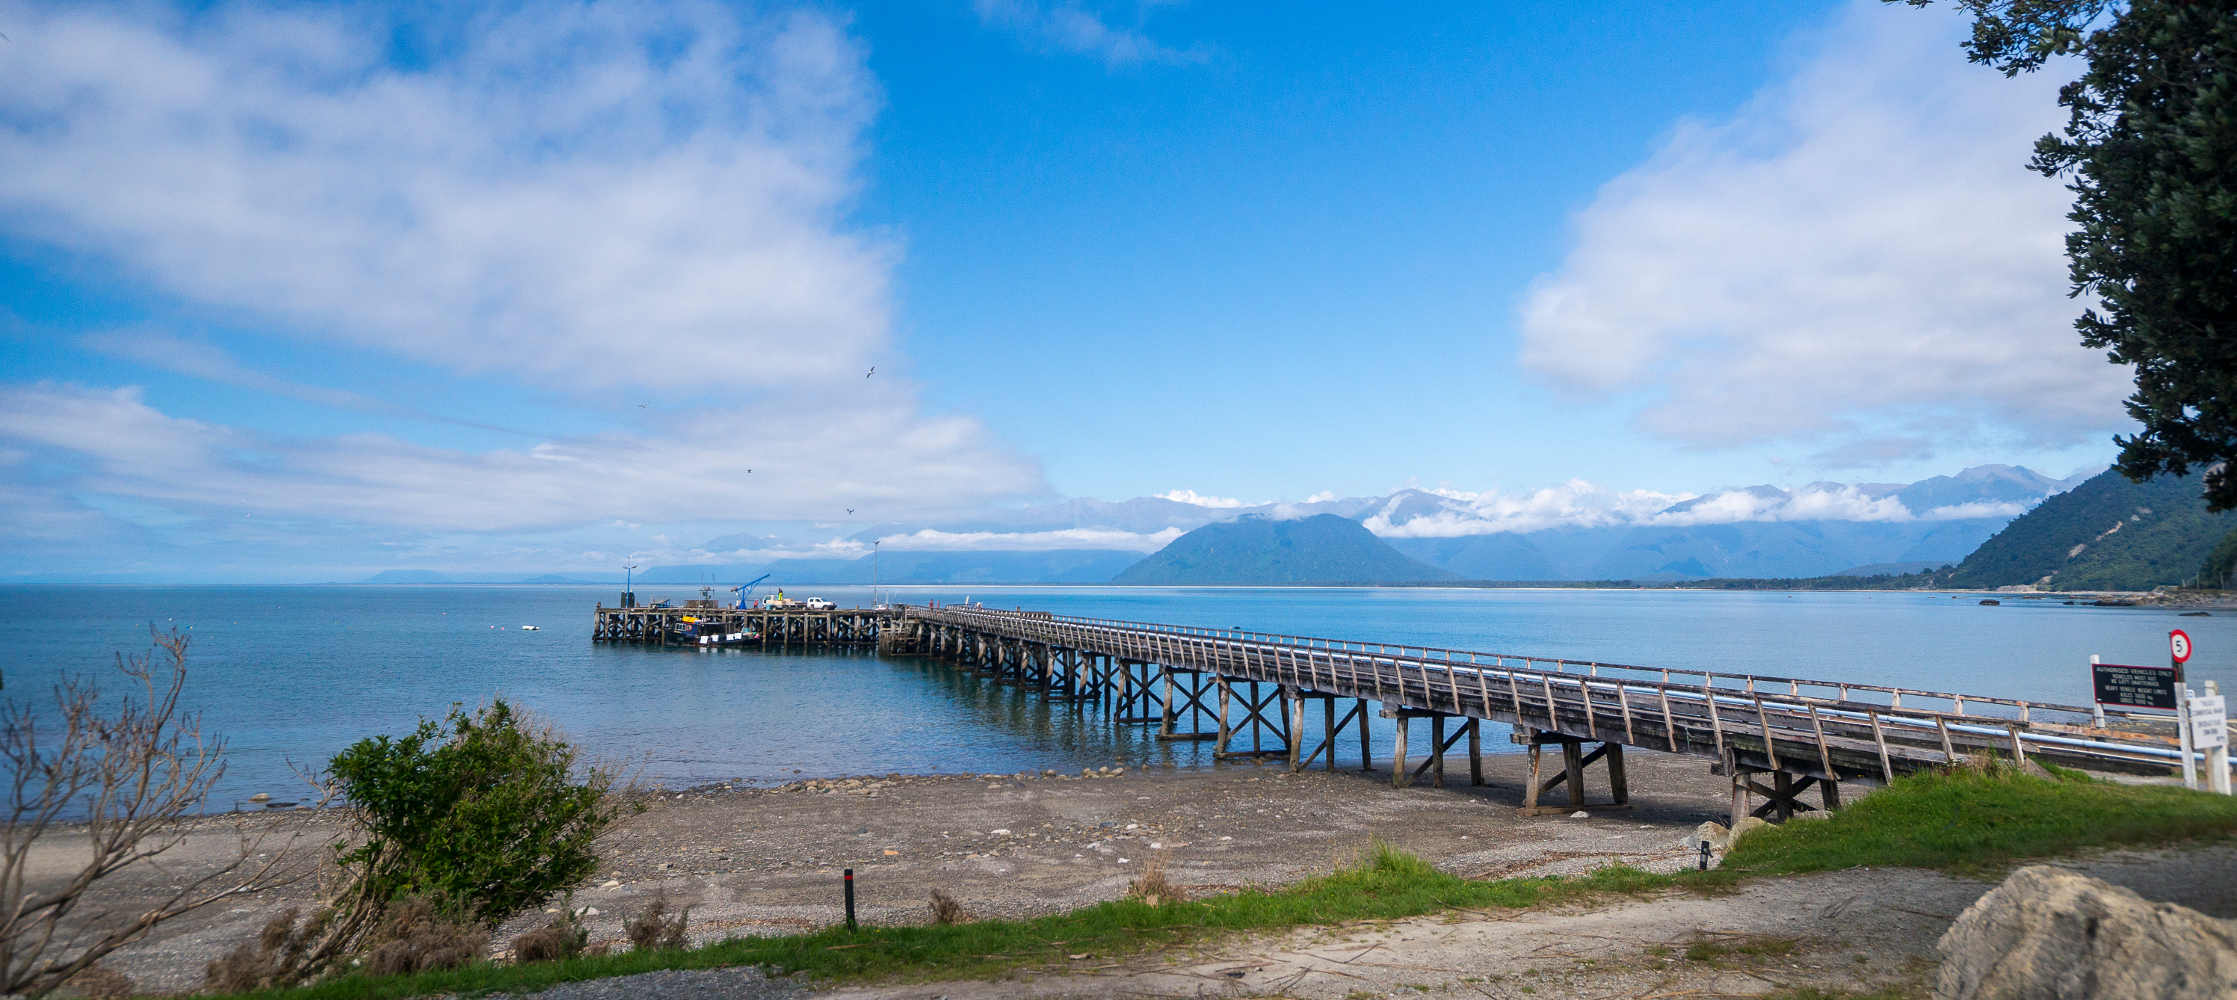 Jackson’s Bay, West Coast, New Zealand @Stewart Nimmo